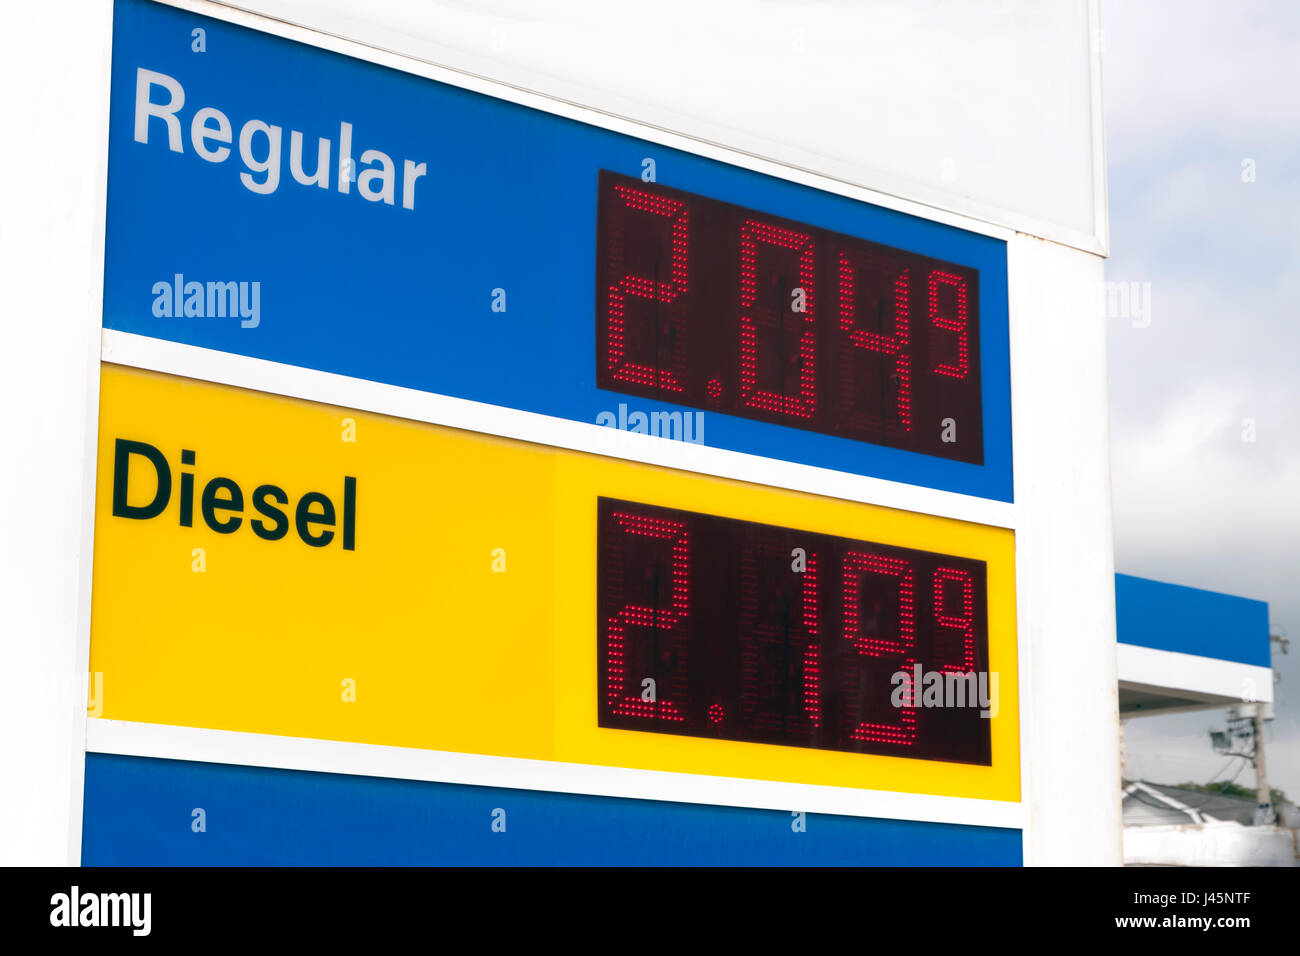 Publicidad firme precios muy bajos en una estación de gasolina. Foto de stock